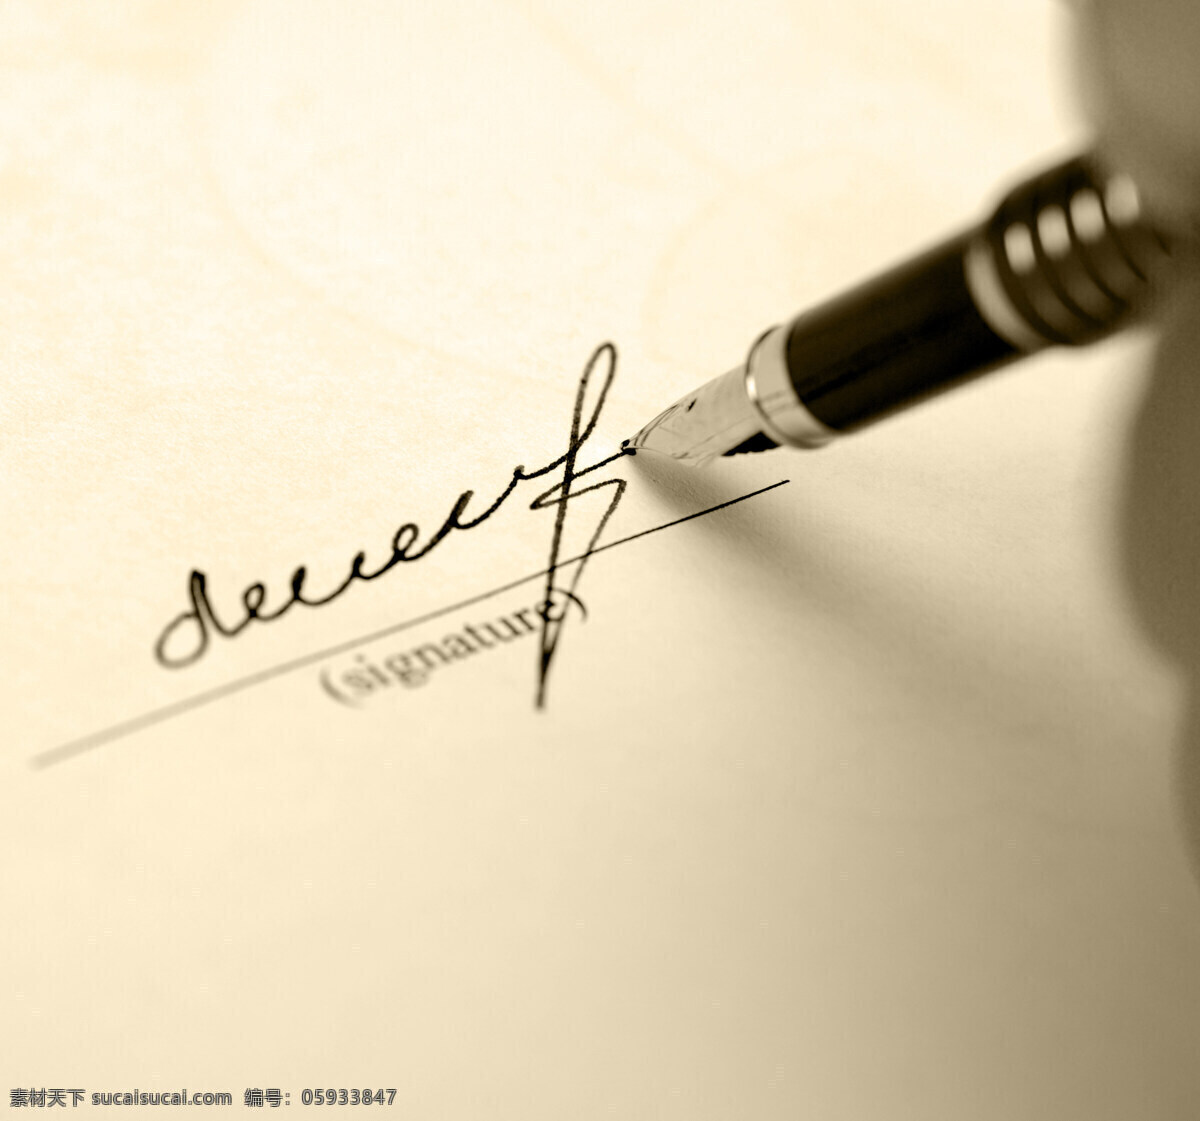 签字笔 钢笔 书写 字迹 签名 高清图片 总裁签字 文化艺术